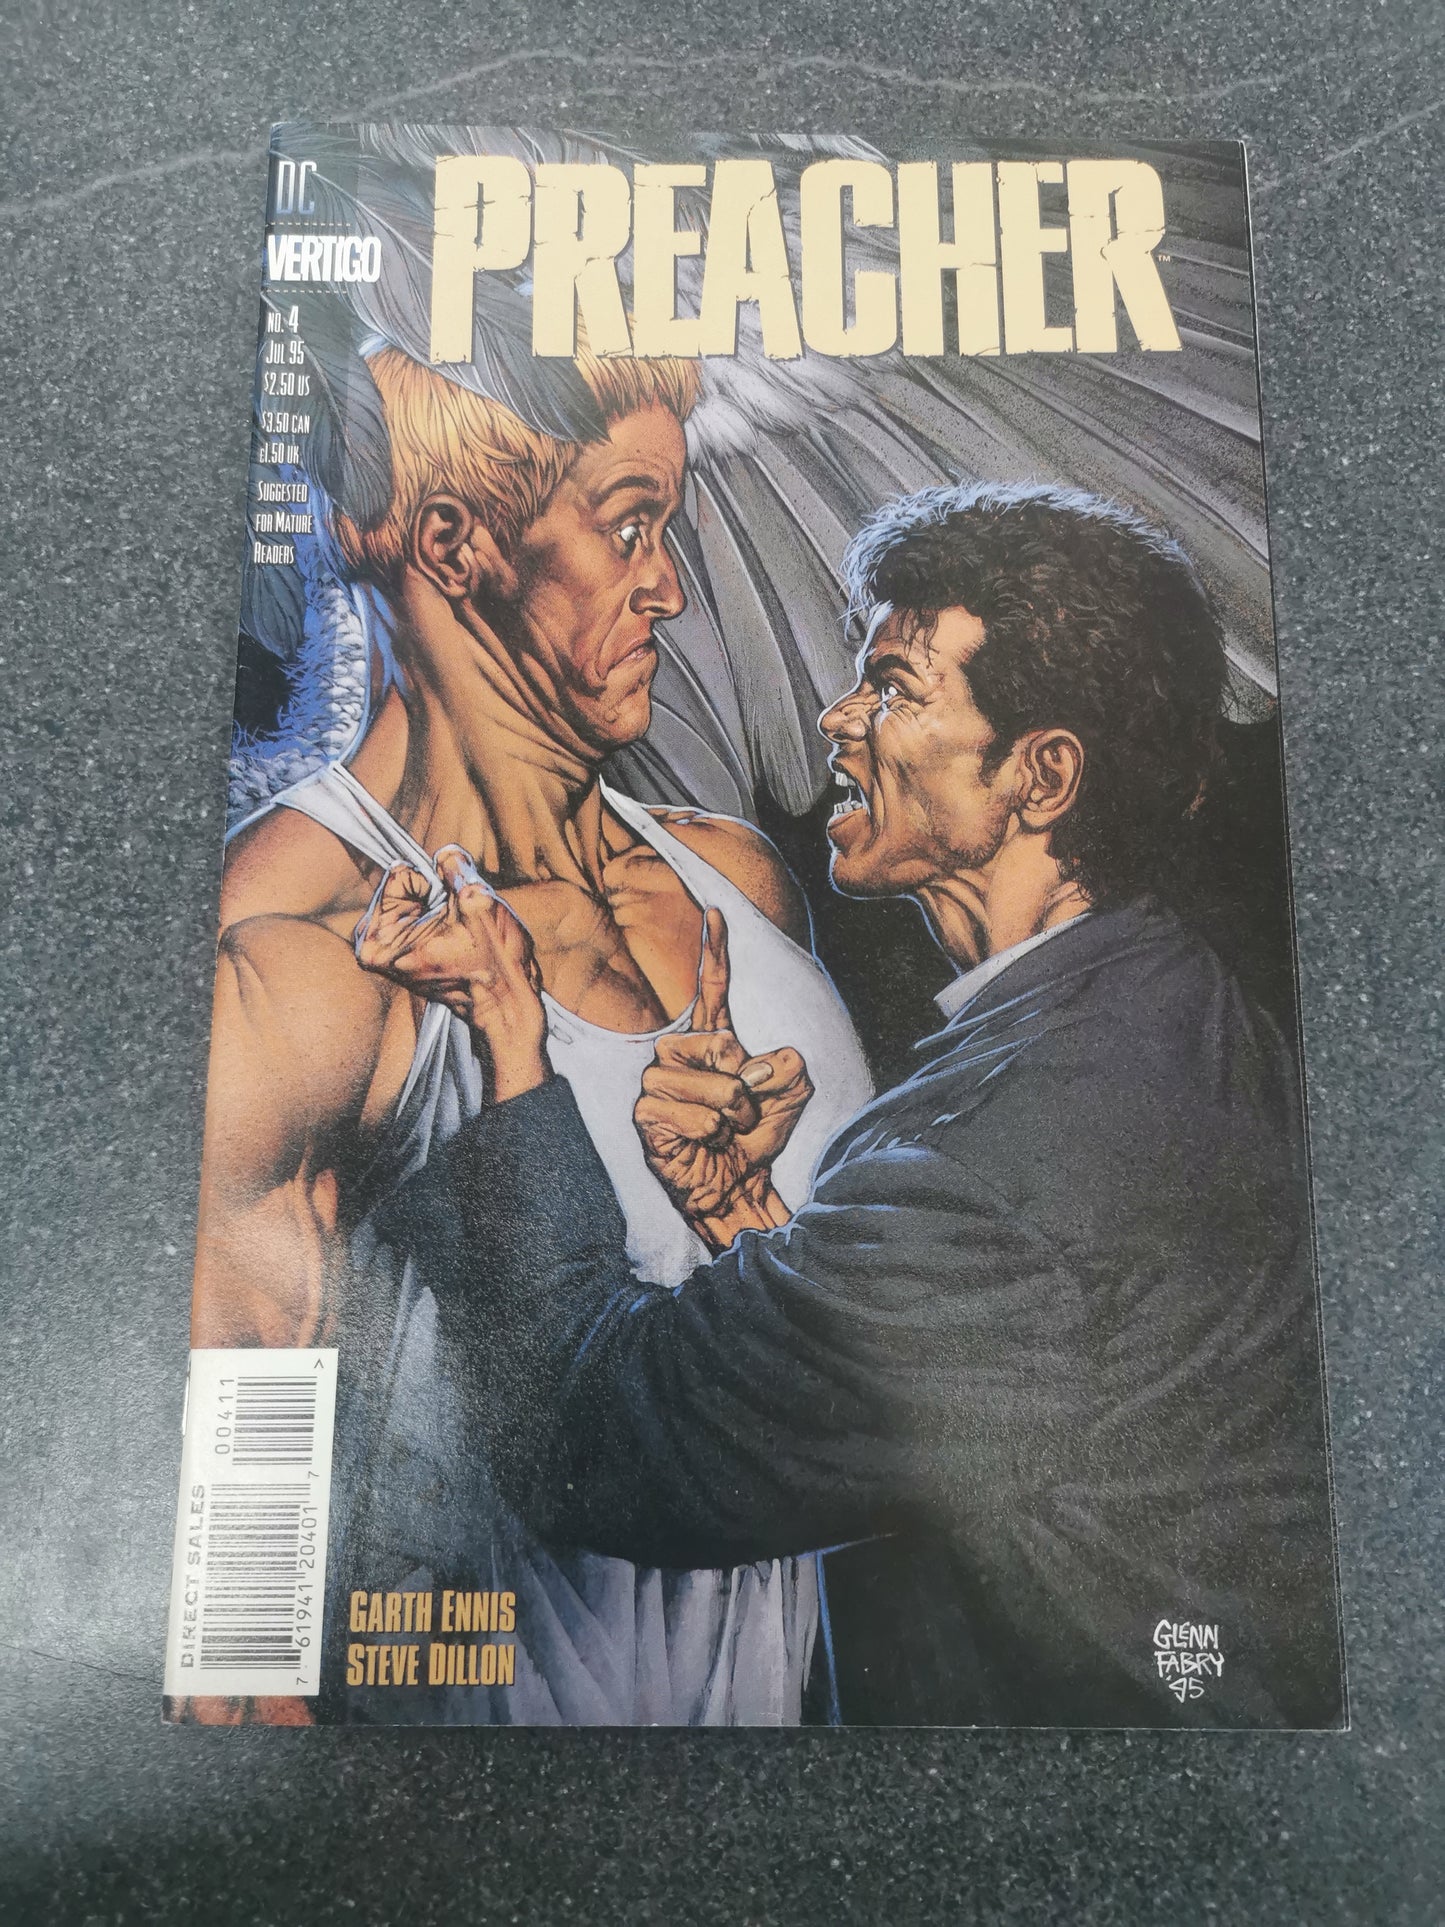 Preacher #4 1995 DC Vertigo comic